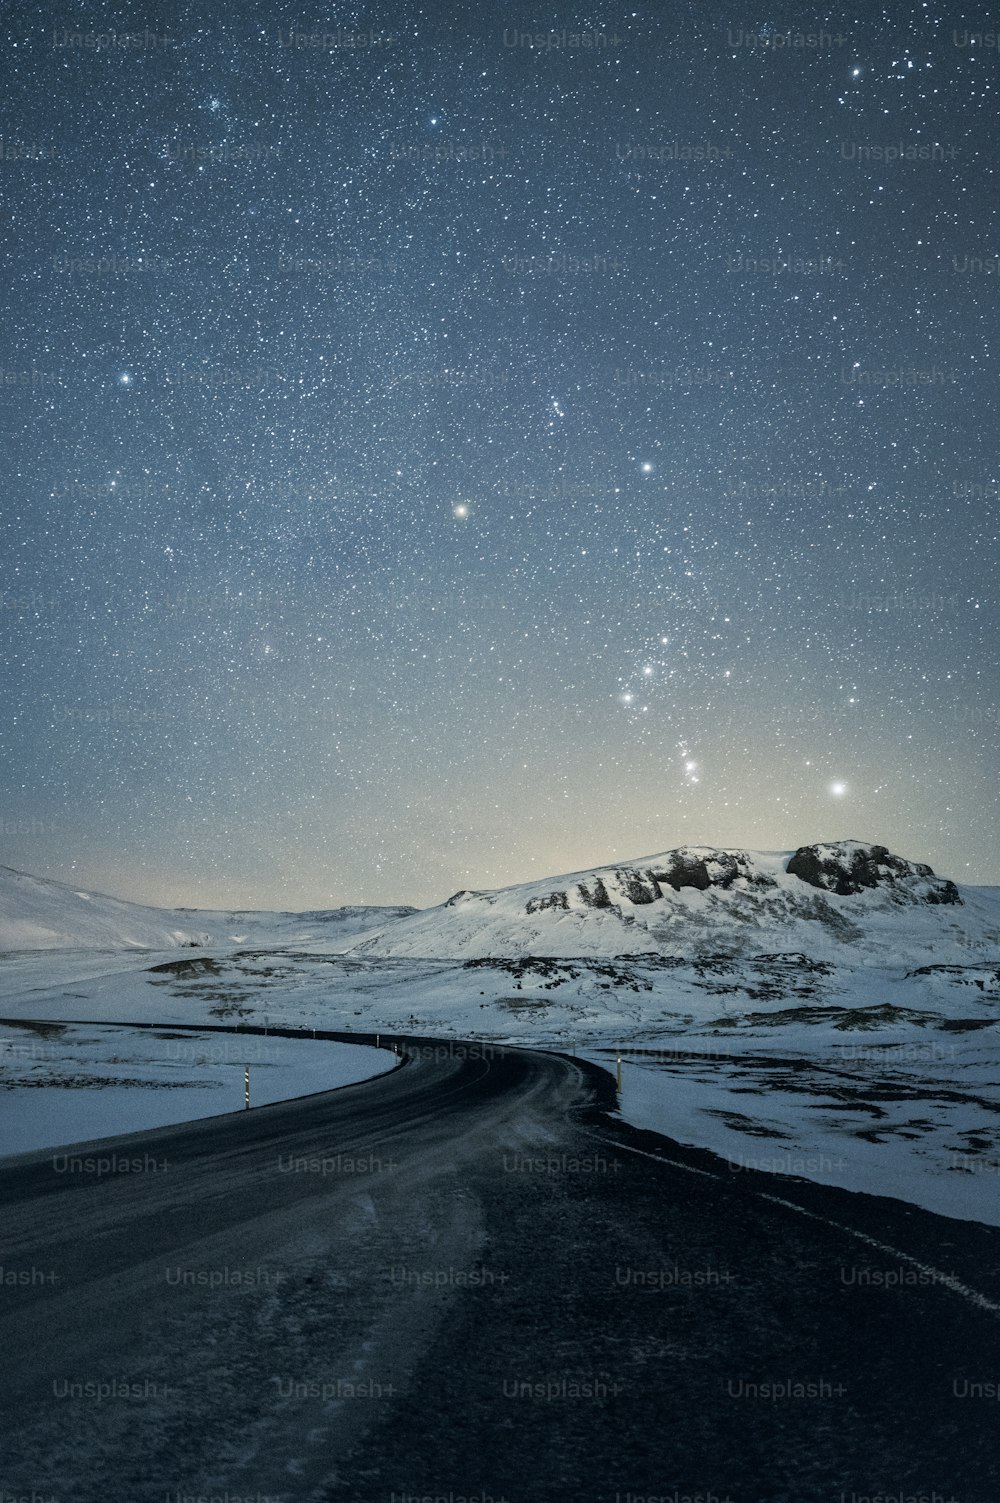 Der Nachthimmel ist voller Sterne über einem schneebedeckten Berg